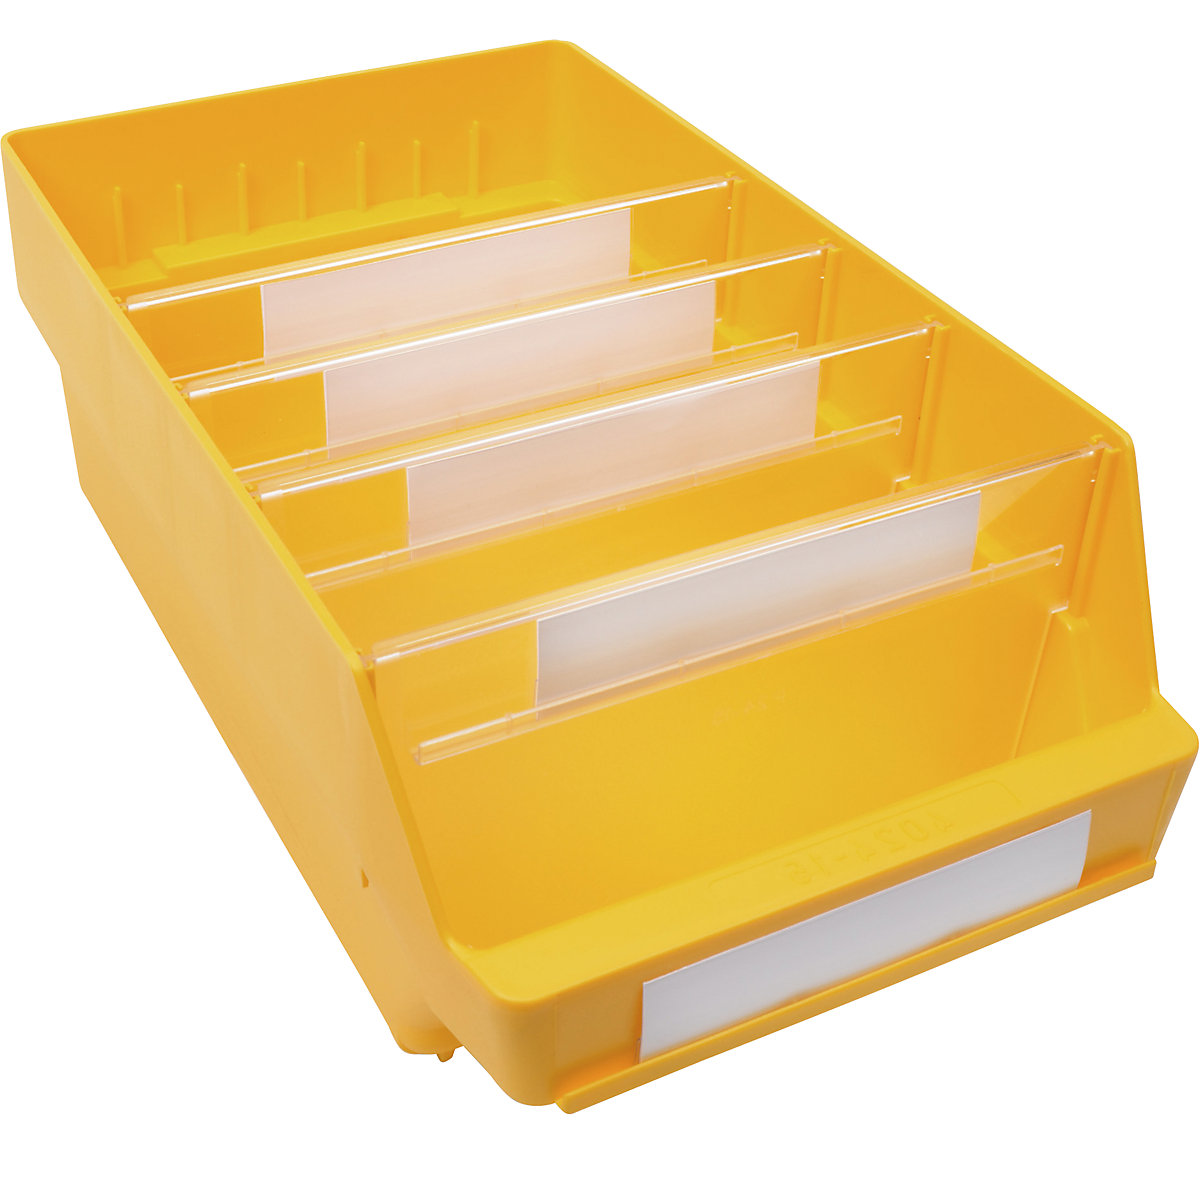 Kutija za regale od polipropilena otpornog na udarce – STEMO, u žutoj boji, DxŠxV 400 x 240 x 150 mm, pak. 10 kom.-9